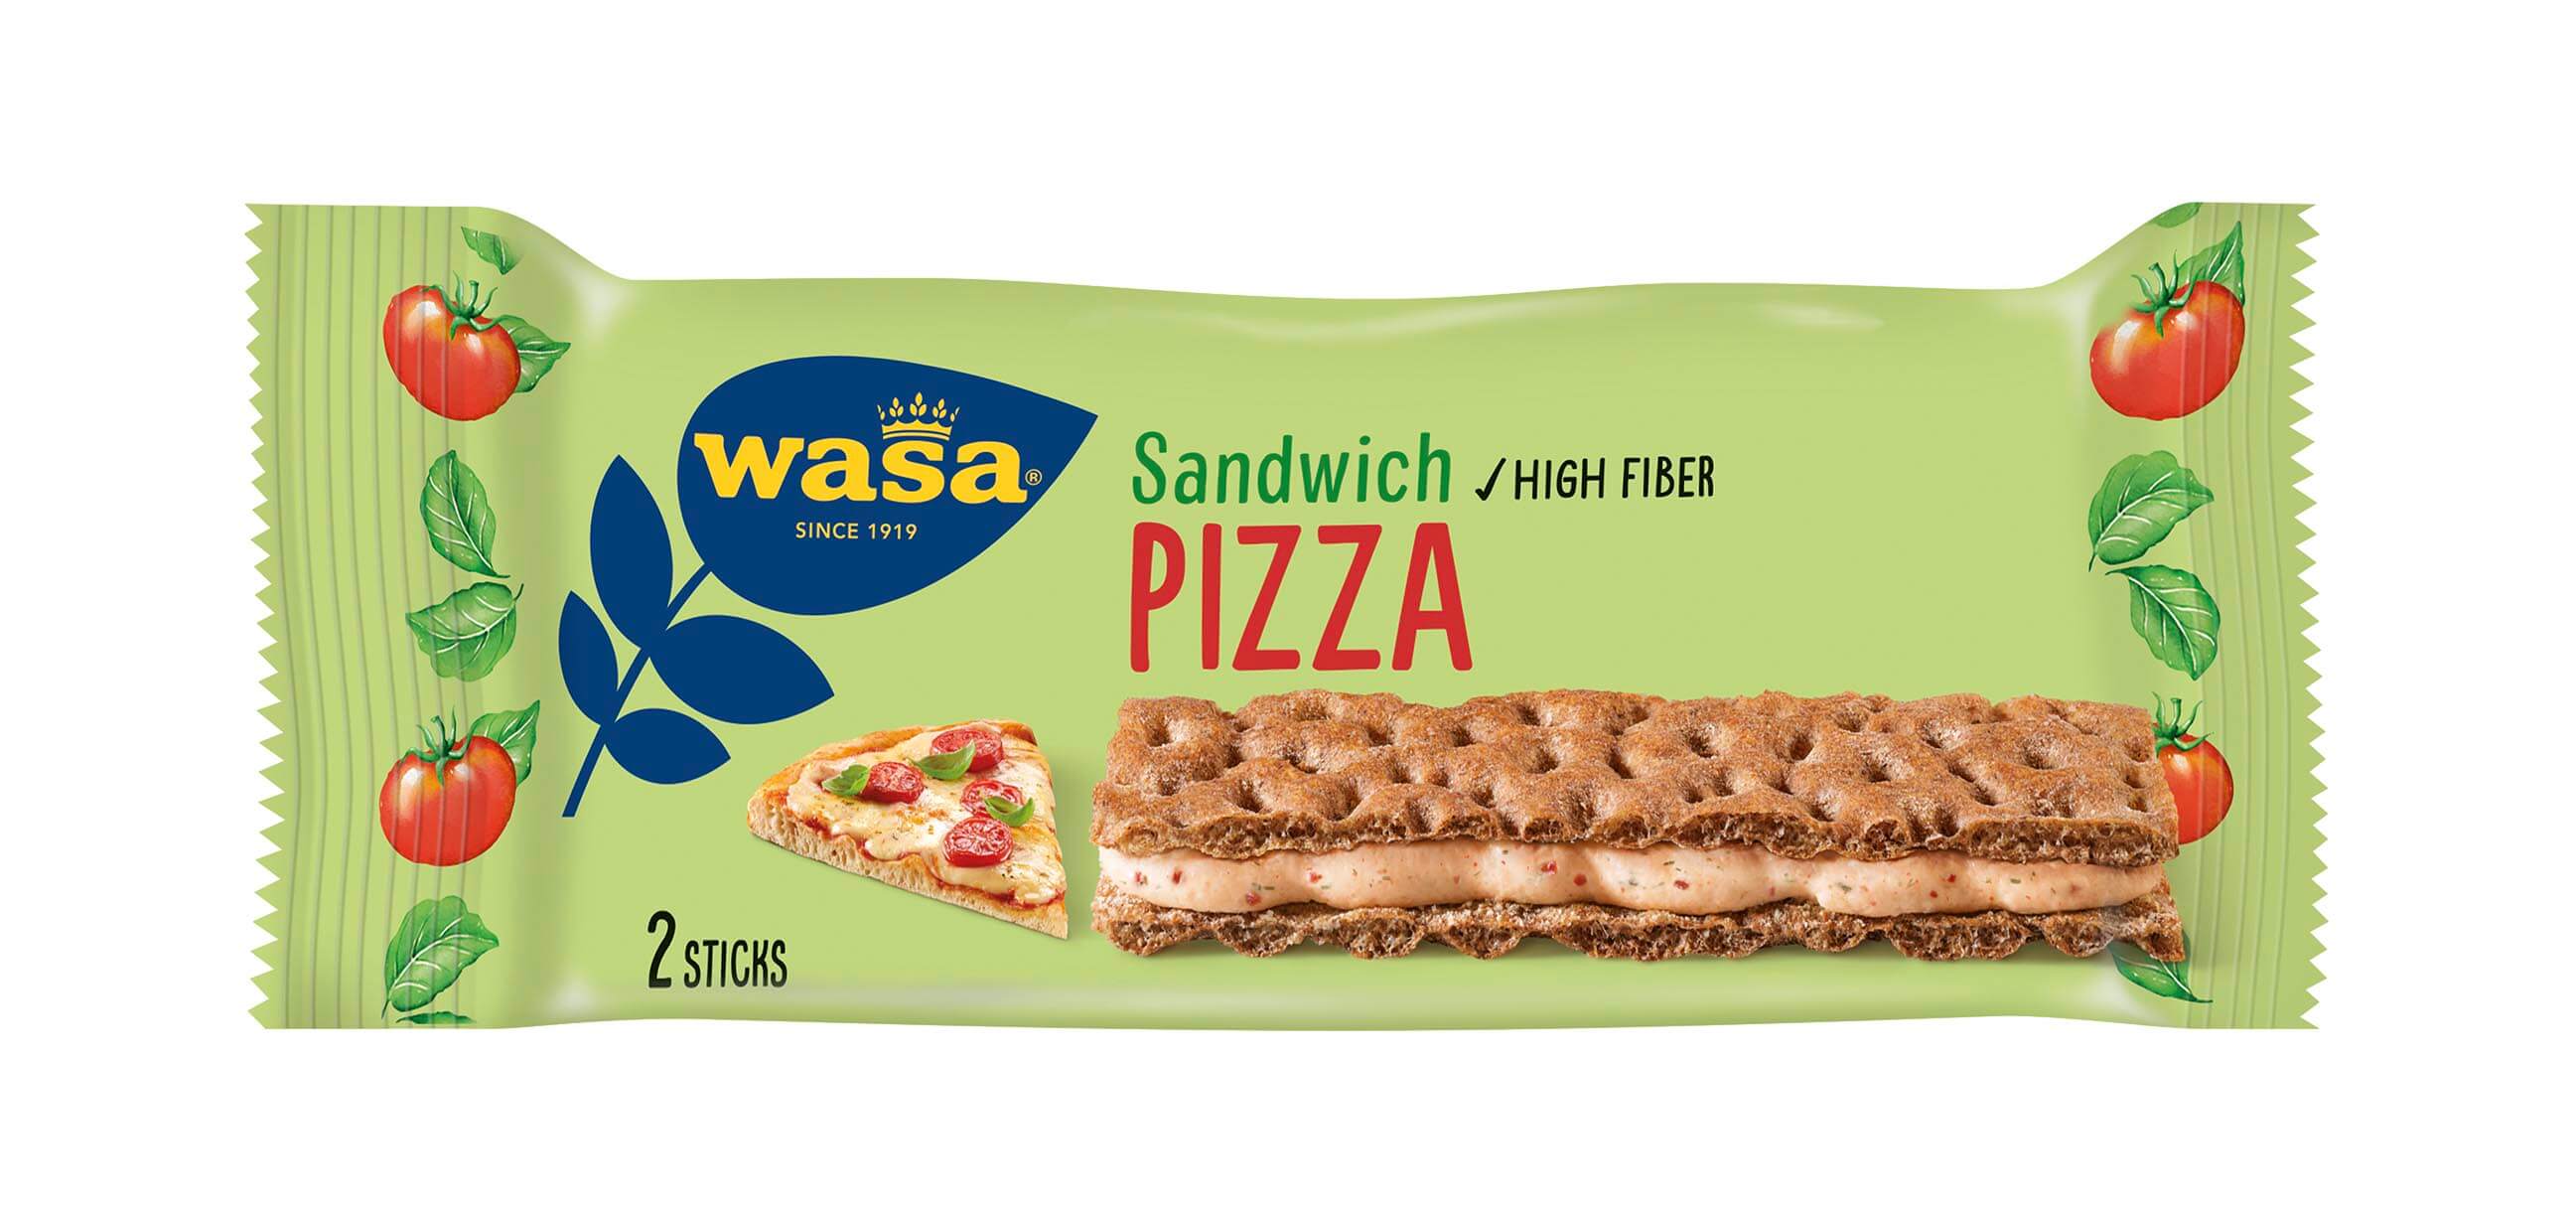 Wasa Sandwich Pizza - Upptäck det perfekta mellanmålet, gott knäckebröd med krämig fyllning. Utmärkt som ett lätt mellanmål på språng och som bra mellanmål på jobbet, efter skolan eller innan träning.